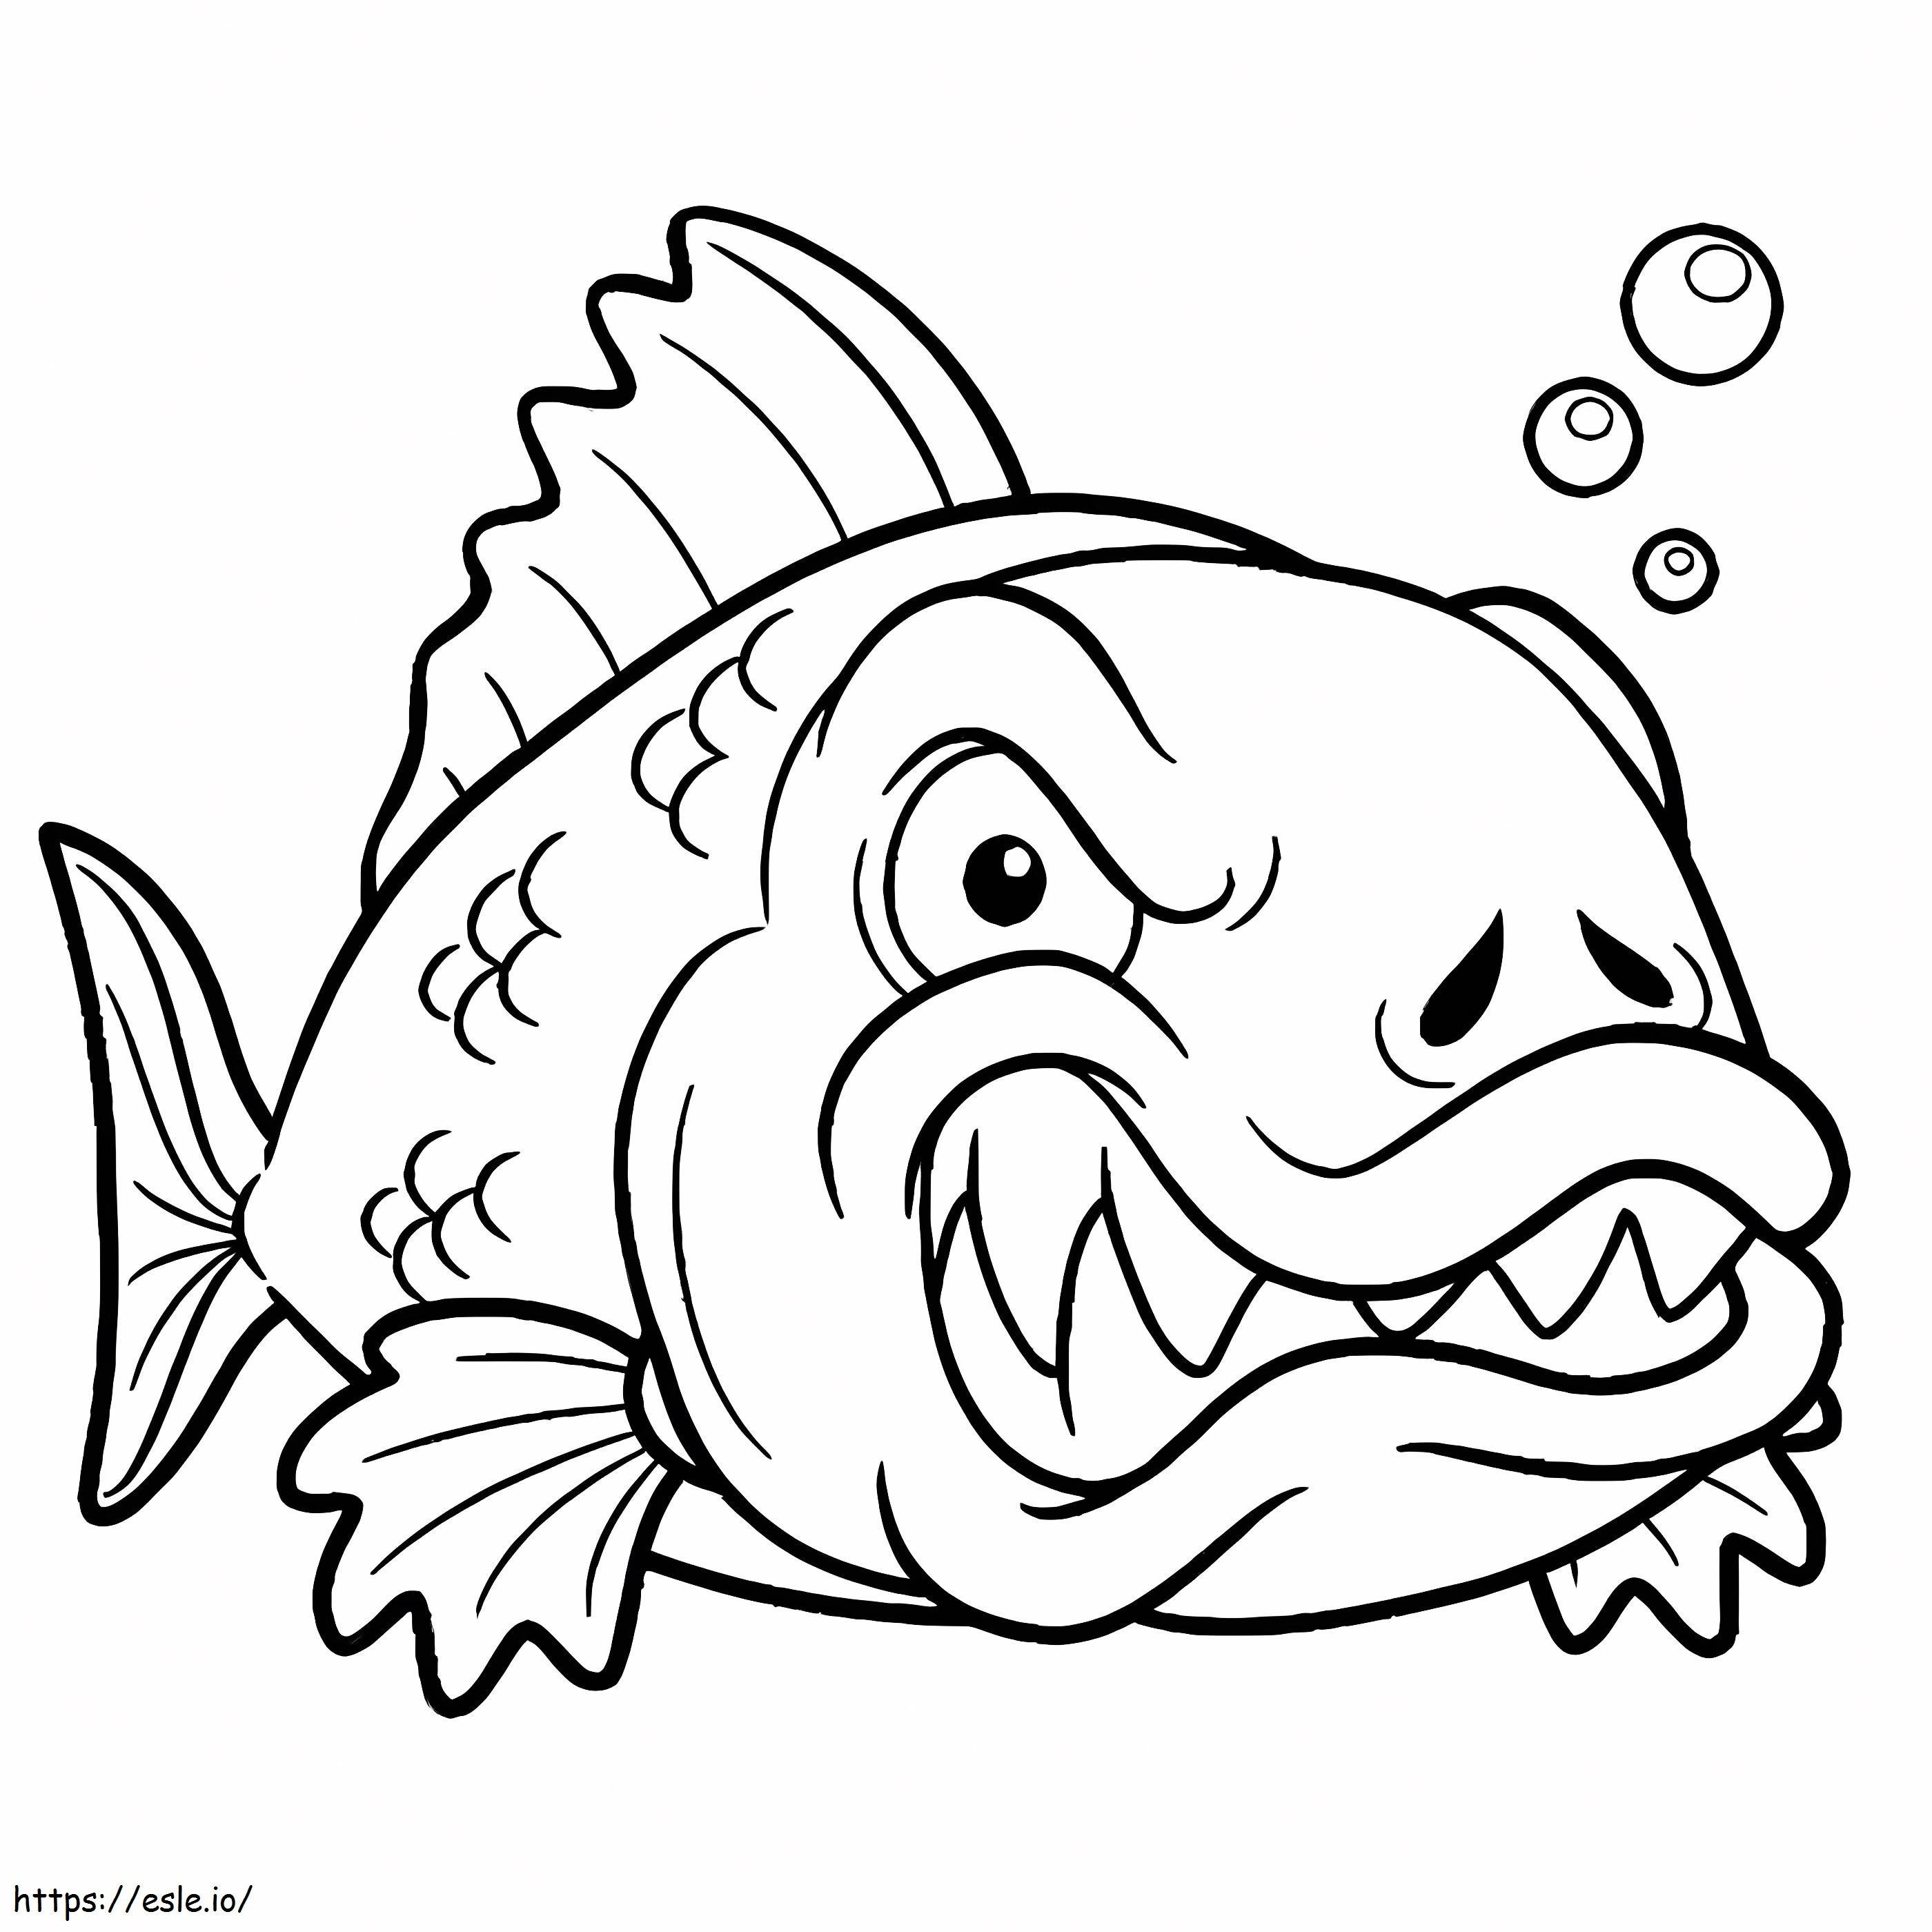 Wütender Fisch ausmalbilder